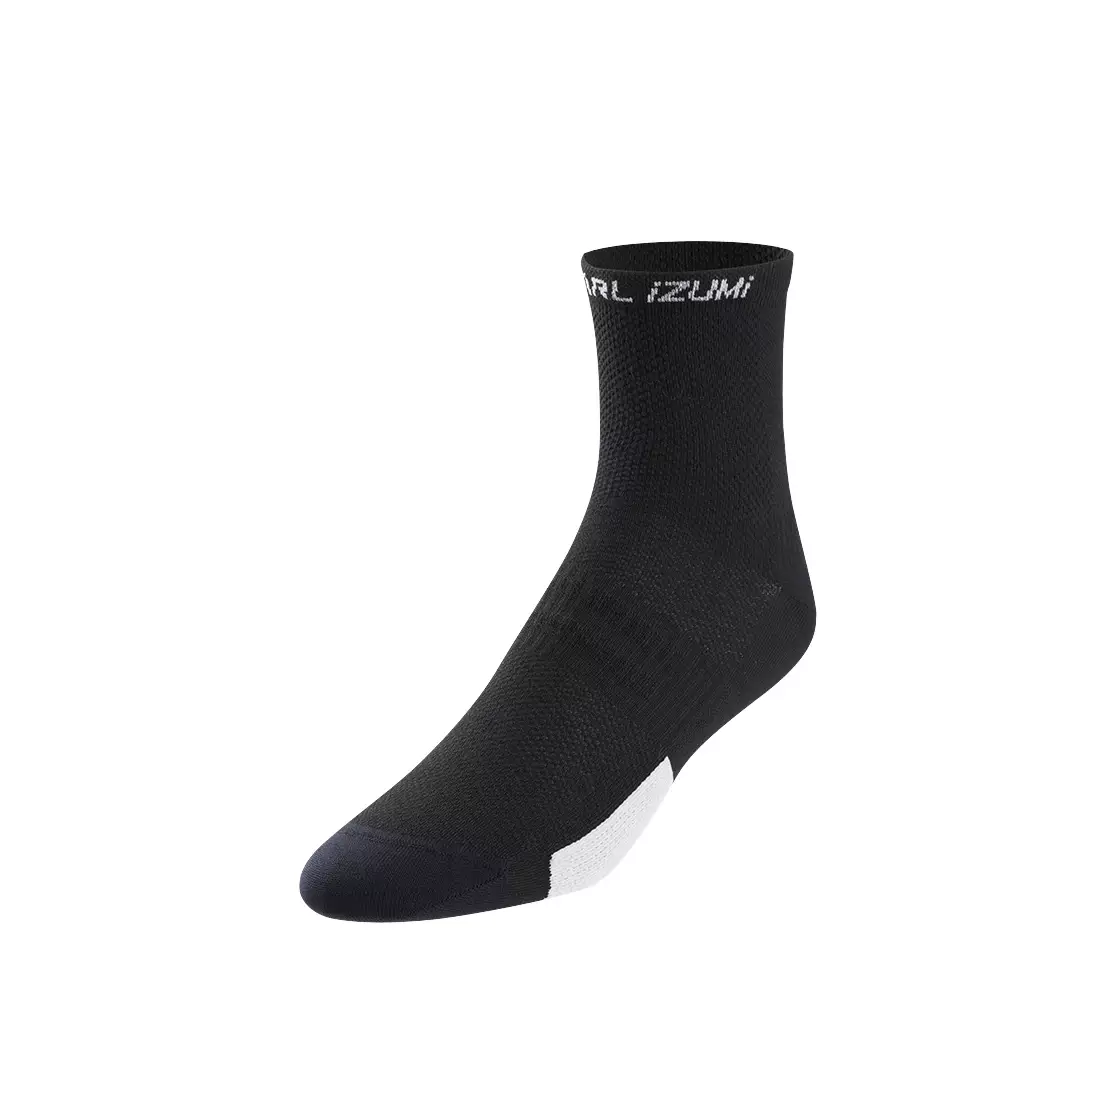 PEARL IZUMI ELITE men's cycling socks black 14151801